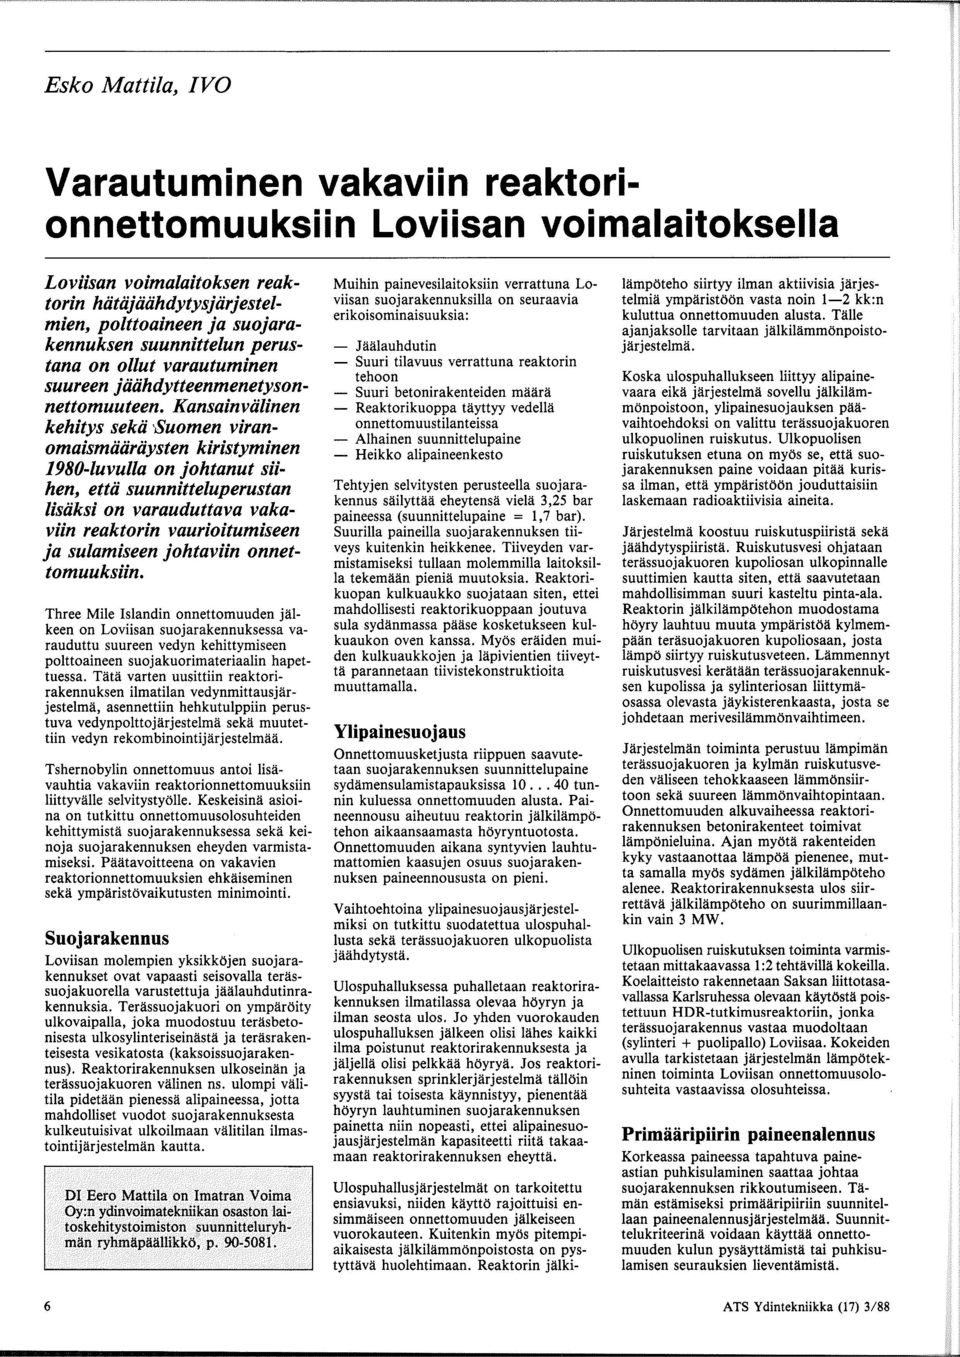 Kansainviilinen kehitys sekii Suomen viranomaismiiiiriiysten kiristyminen 1980-luvulla on johtanut siihen, ettii suunnitteluperustan lisiiksi on varauduttava vakaviin reaktorin vaurioitumiseen ja